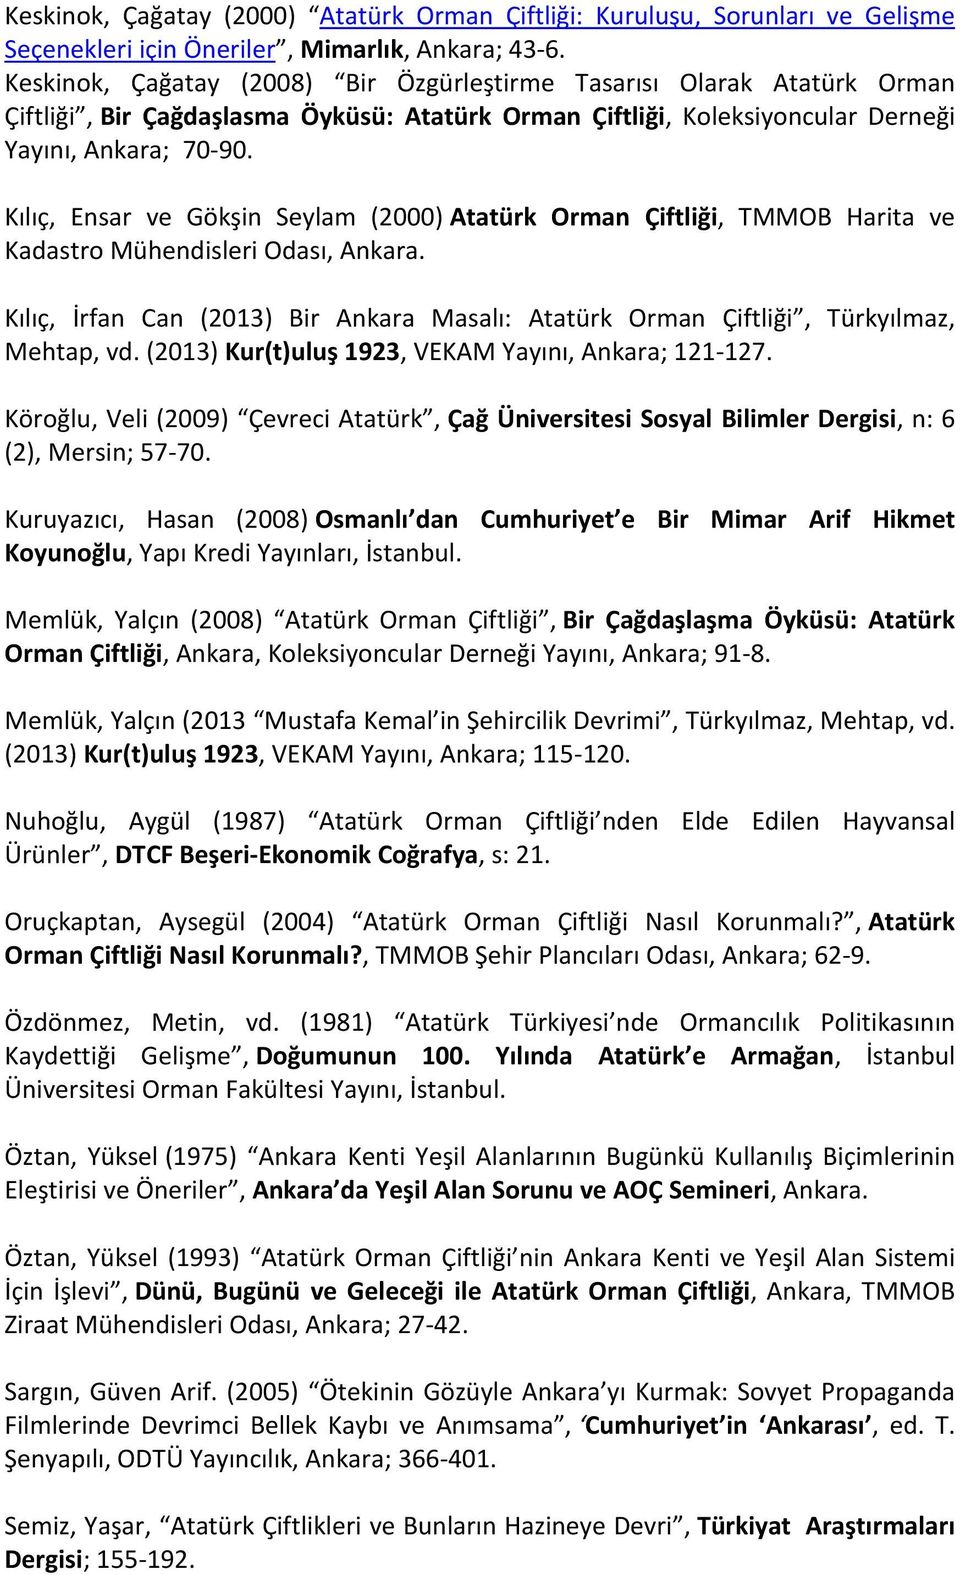 Kılıç, Ensar ve Gökşin Seylam (2000) Atatürk Orman Çiftliği, TMMOB Harita ve Kadastro Mühendisleri Odası, Ankara.